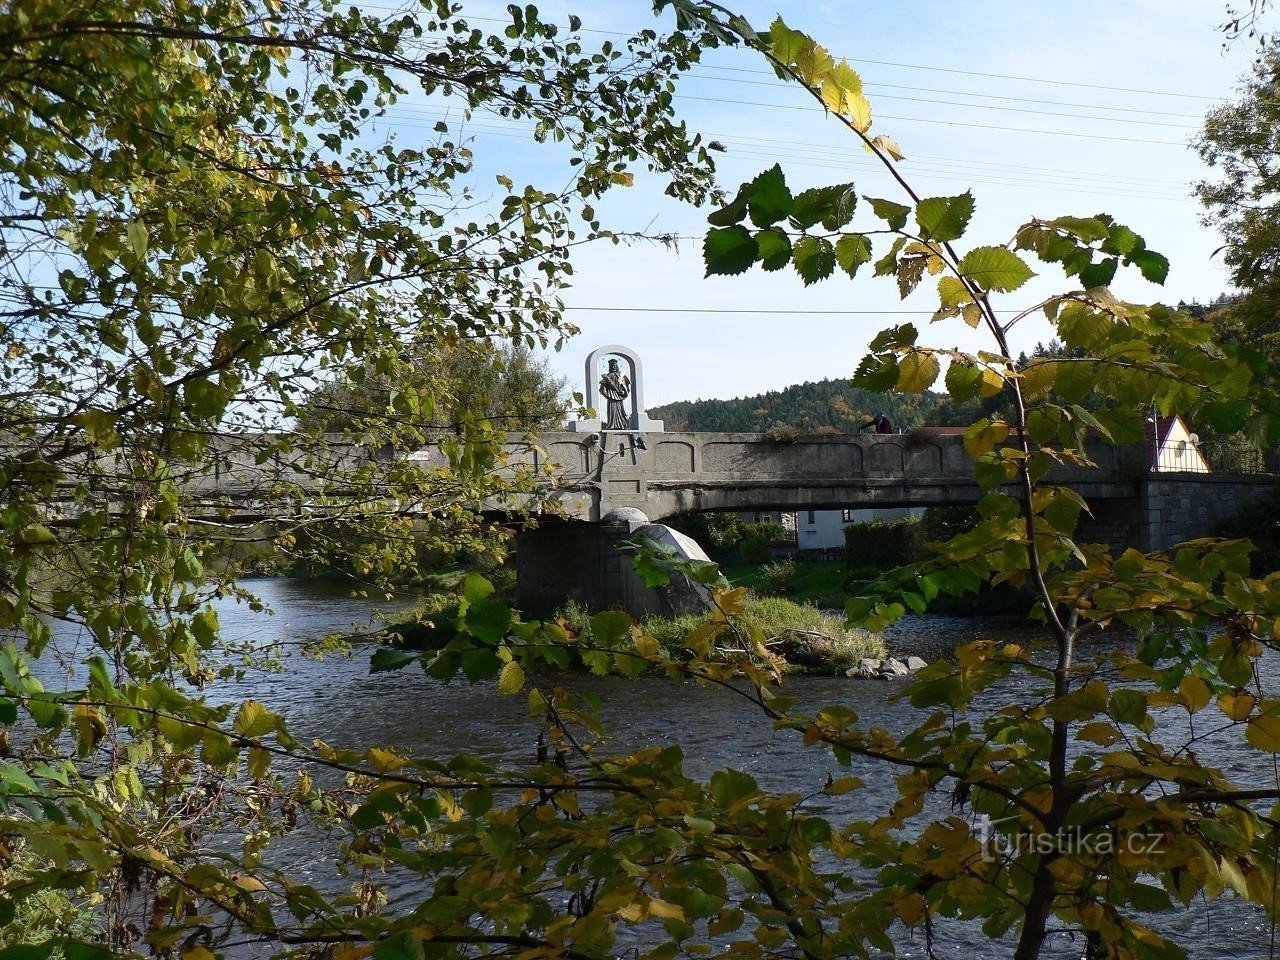 Cap, vue sur le pont et la statue depuis la rive gauche